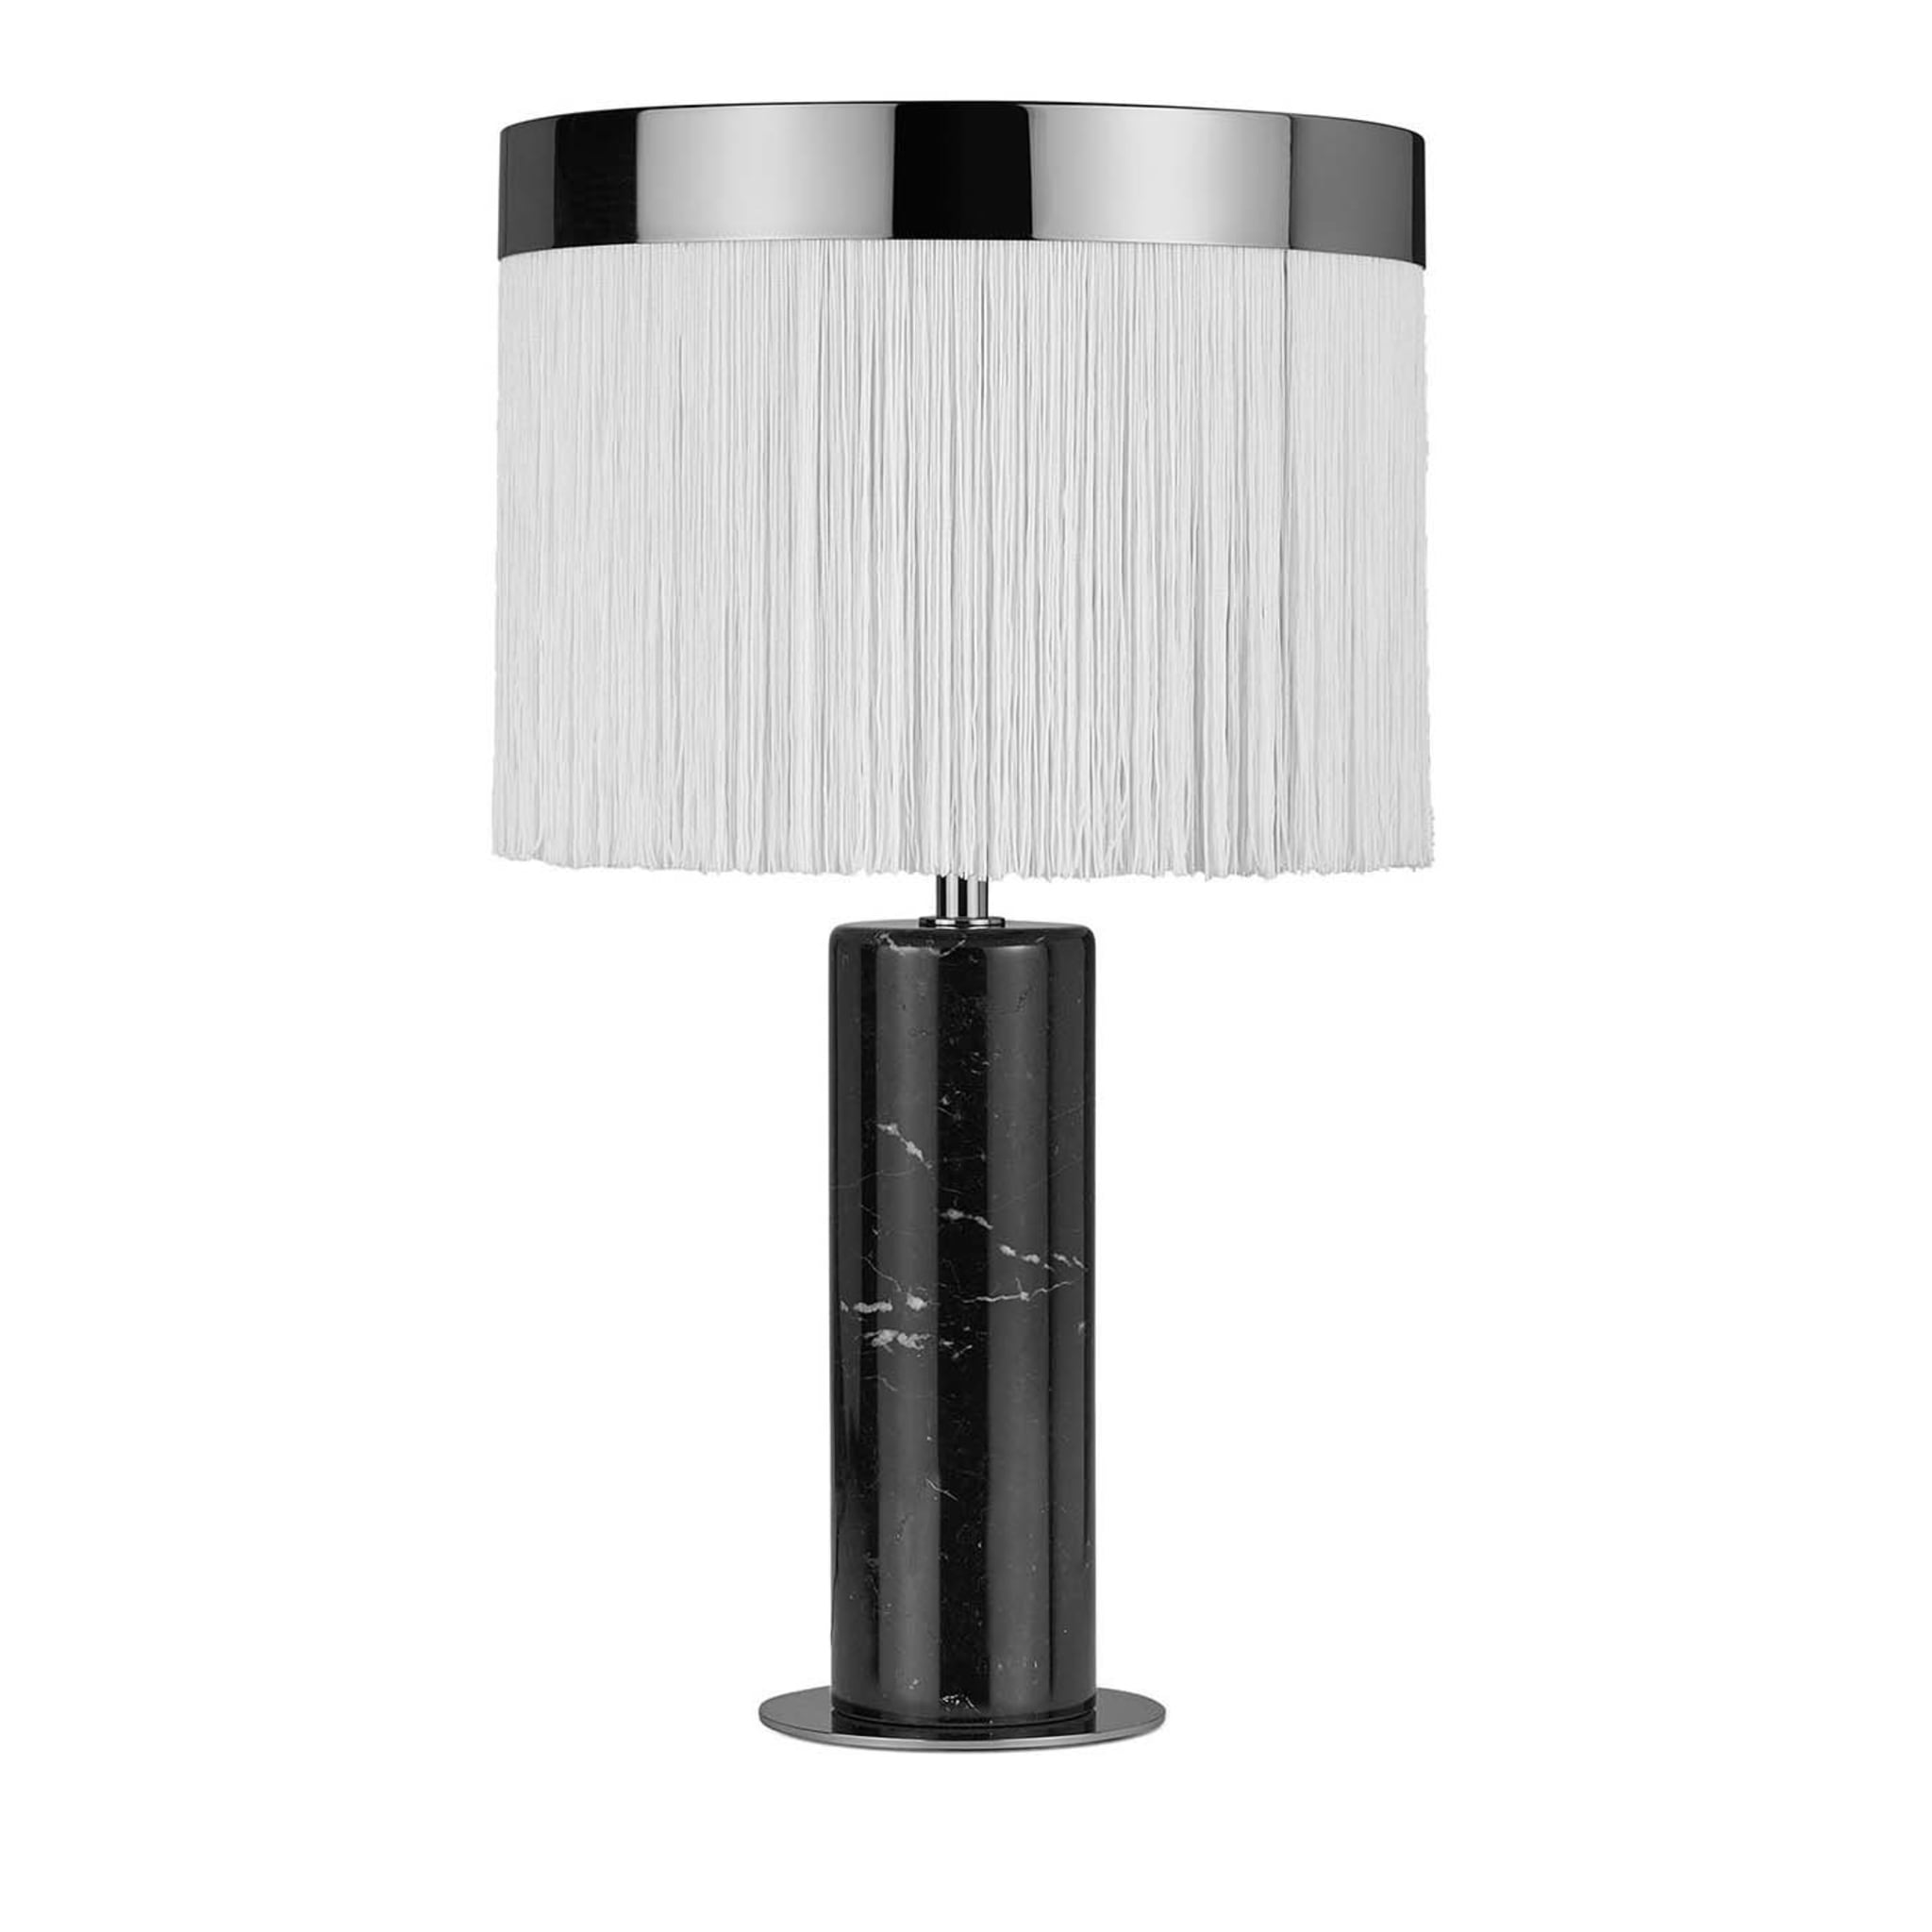 Lampe de table Orsola noir et blanc par Lorenza Bozzoli - Vue principale